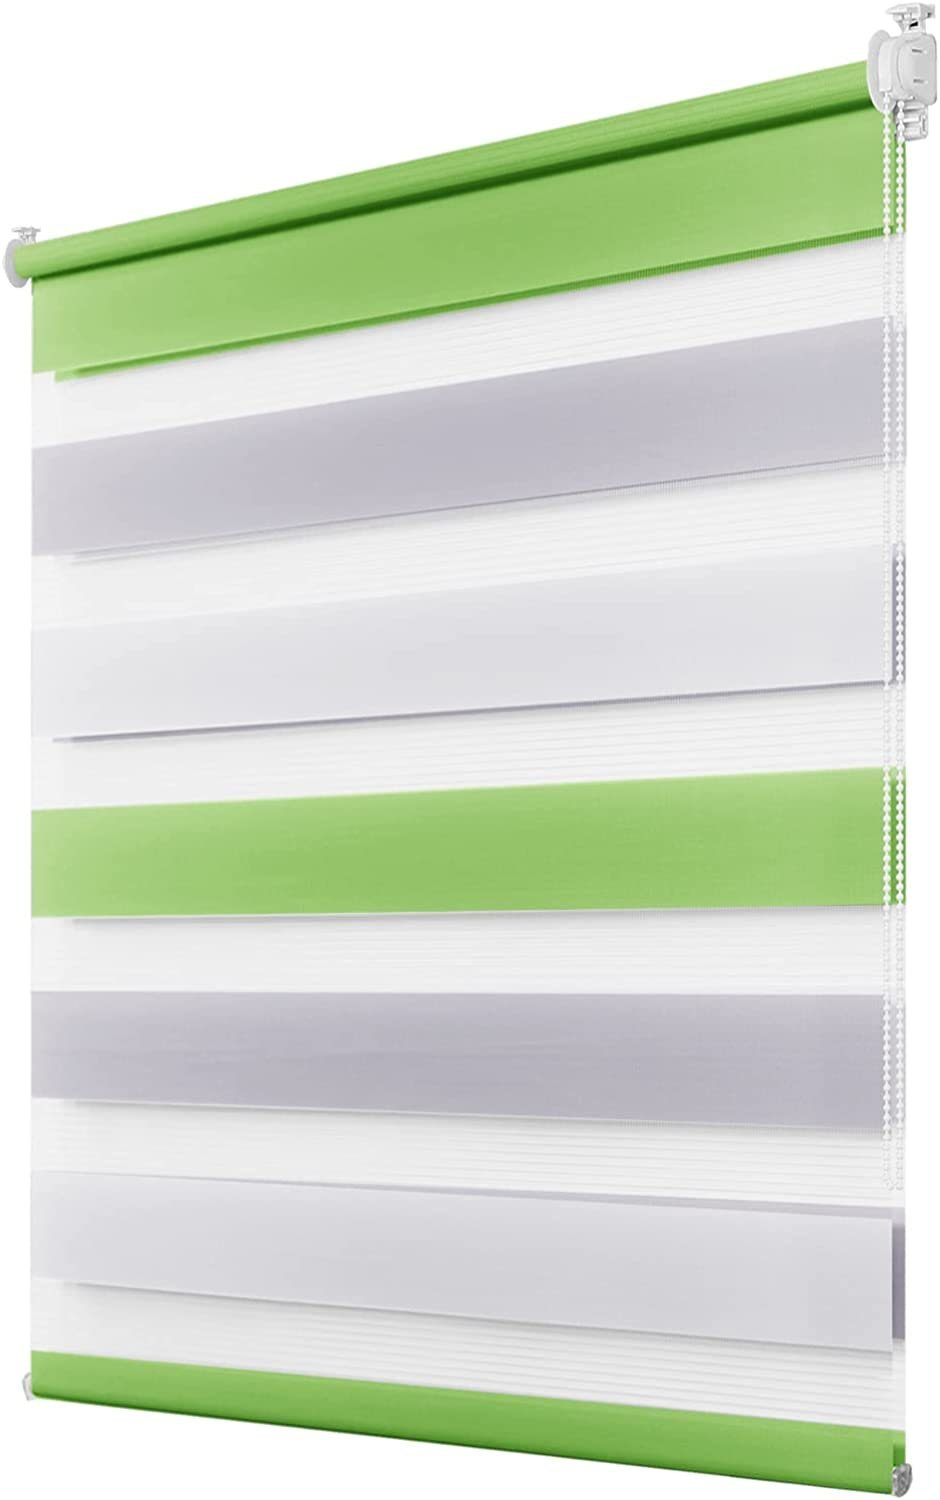 Doppelrollo Fensterrollos Ohne Bohren, Vkele, 130cm/160cm, klemmfix,klemmträger, Sonnenschutz, Lichtdurchlässig und Verdunkelnd. Grün-grau-Weiß